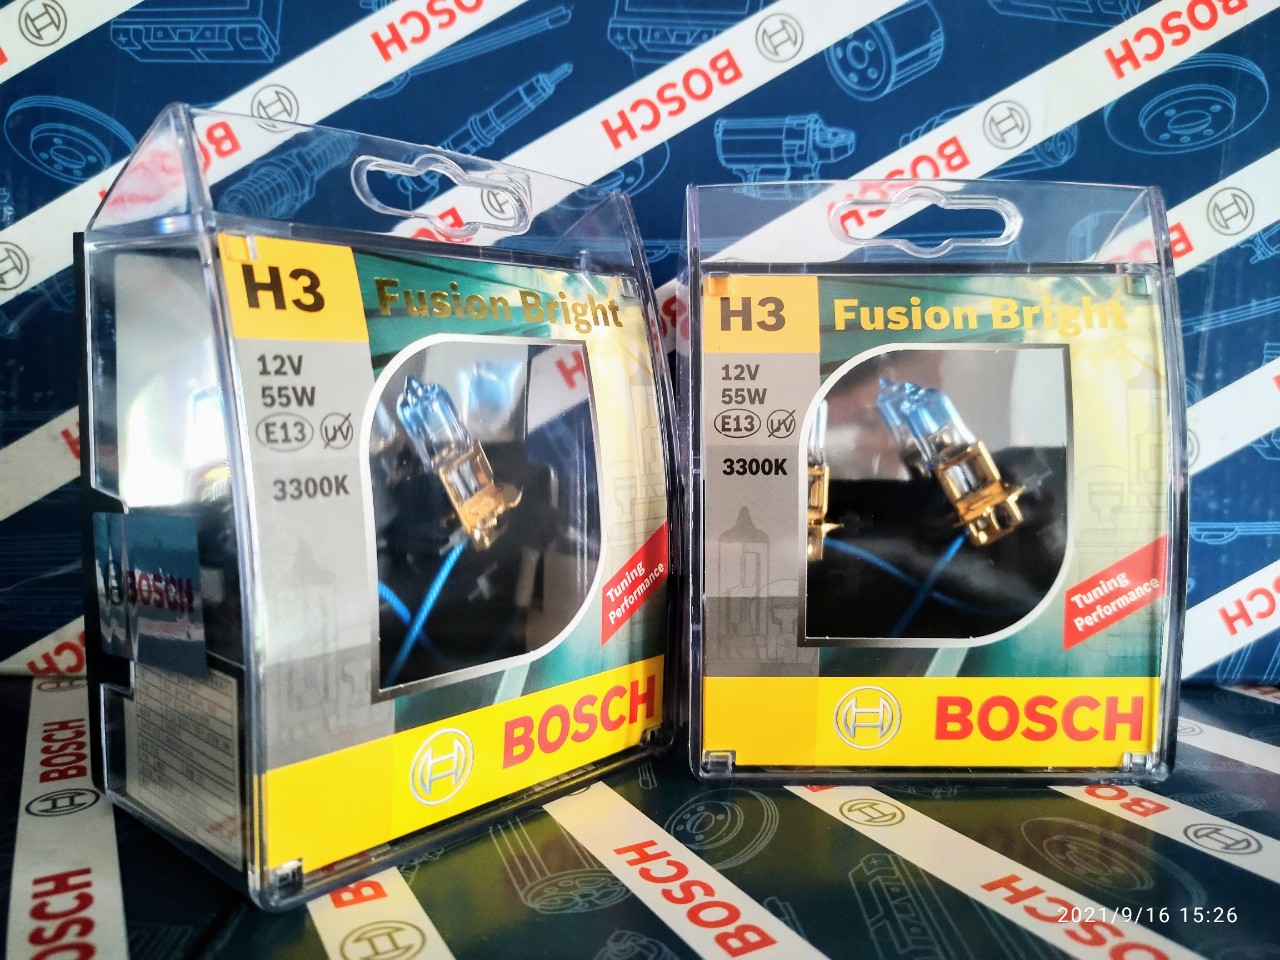 Bóng Đèn Tăng Sáng Bosch H3 12V 55W Fusion Bright 3300K (Hộp 2 Bóng)